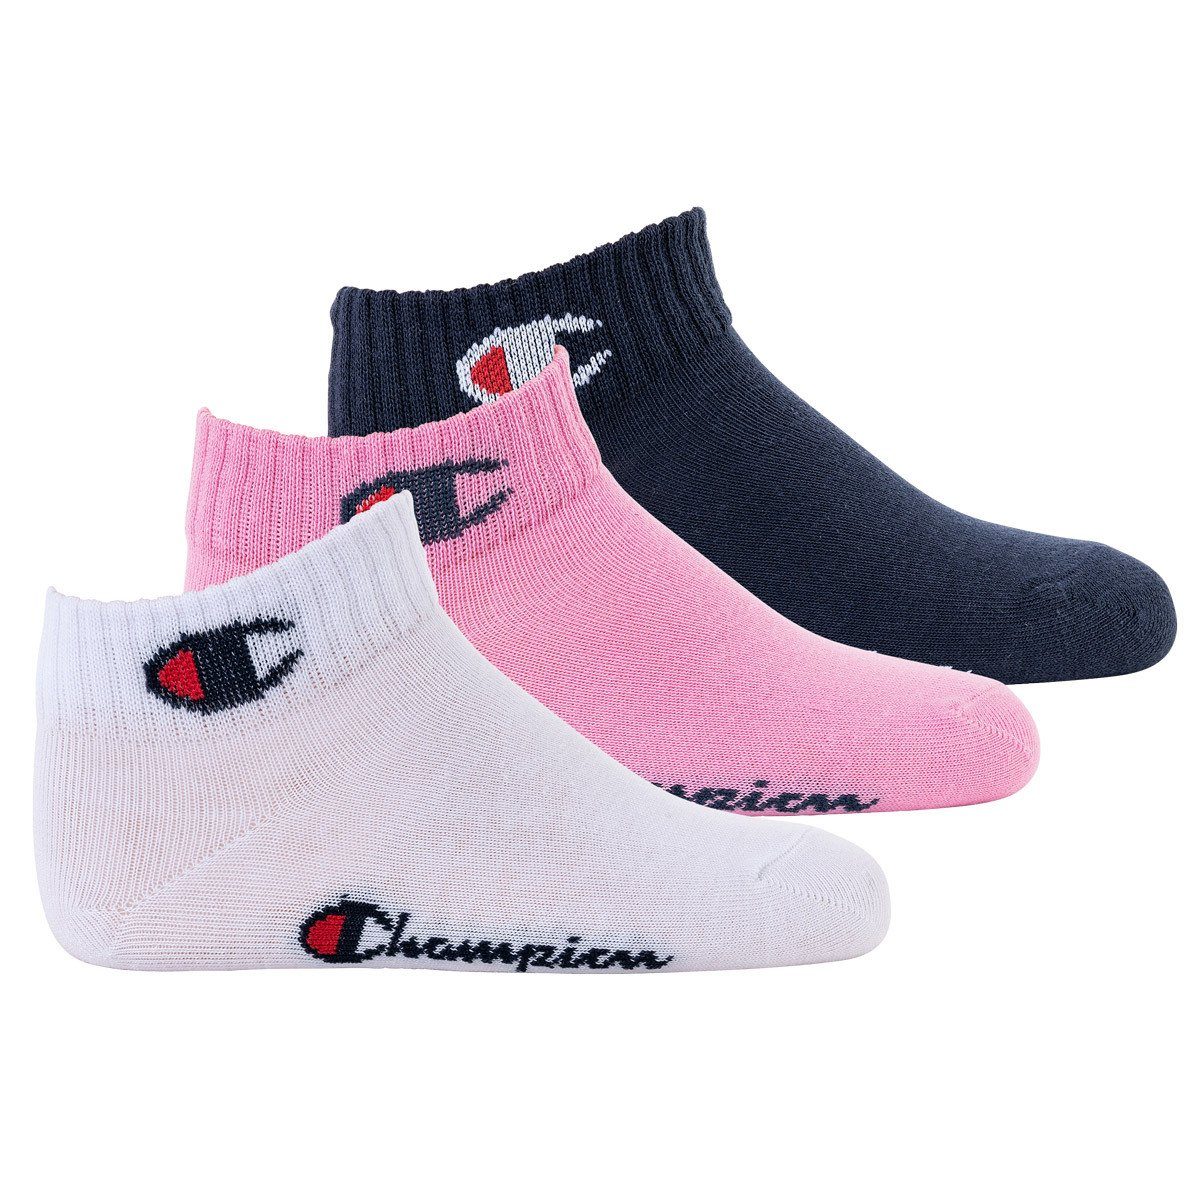 Champion Freizeitsocken Kinder Socken, 3er Pack- Quarter, einfarbig Pink/Weiß/Blau